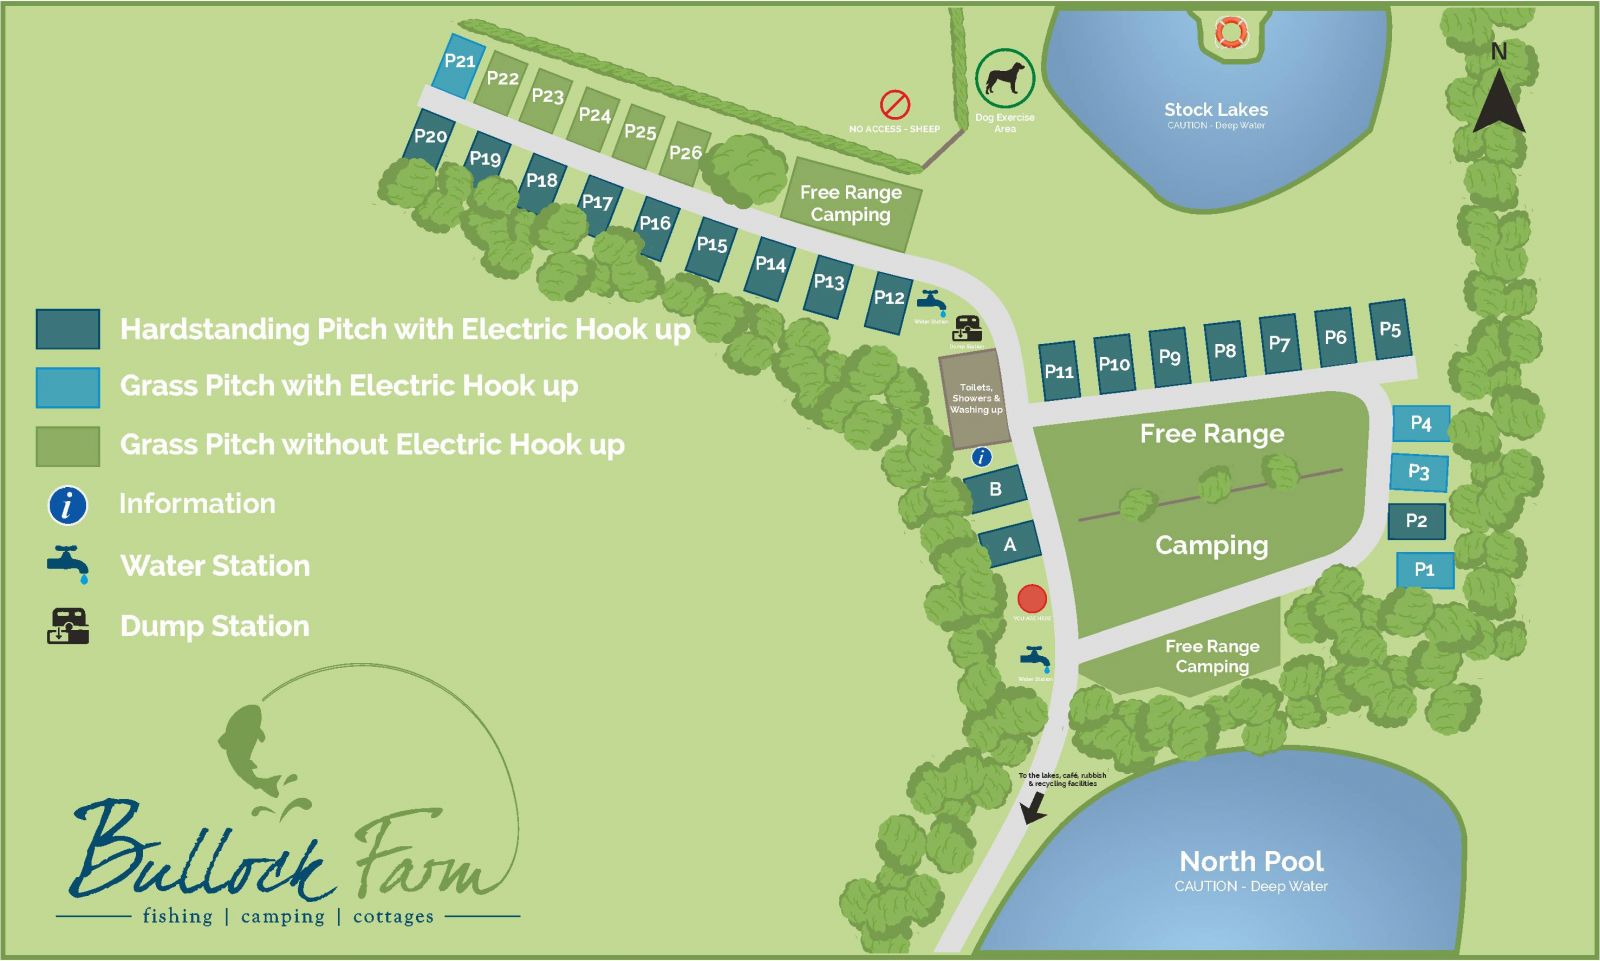 /Bullock Farm - Campsite Map.jpg